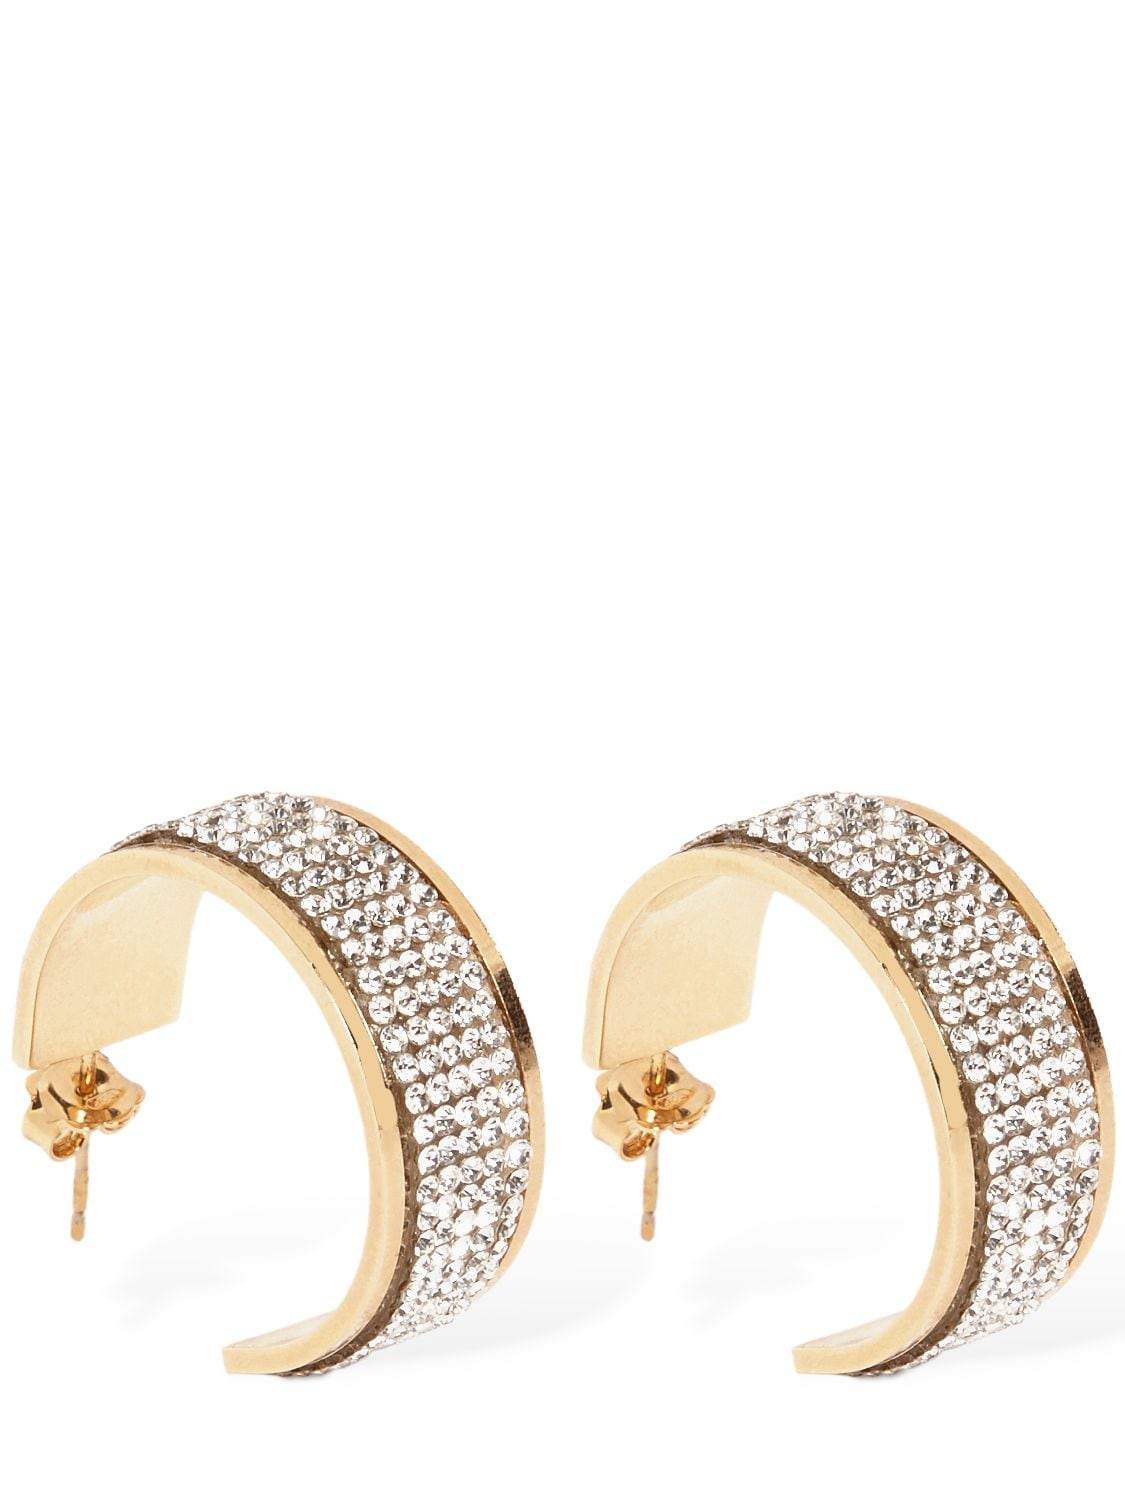 Rosantica Astoria Crystal Hoop Earrings In Crystal,gold